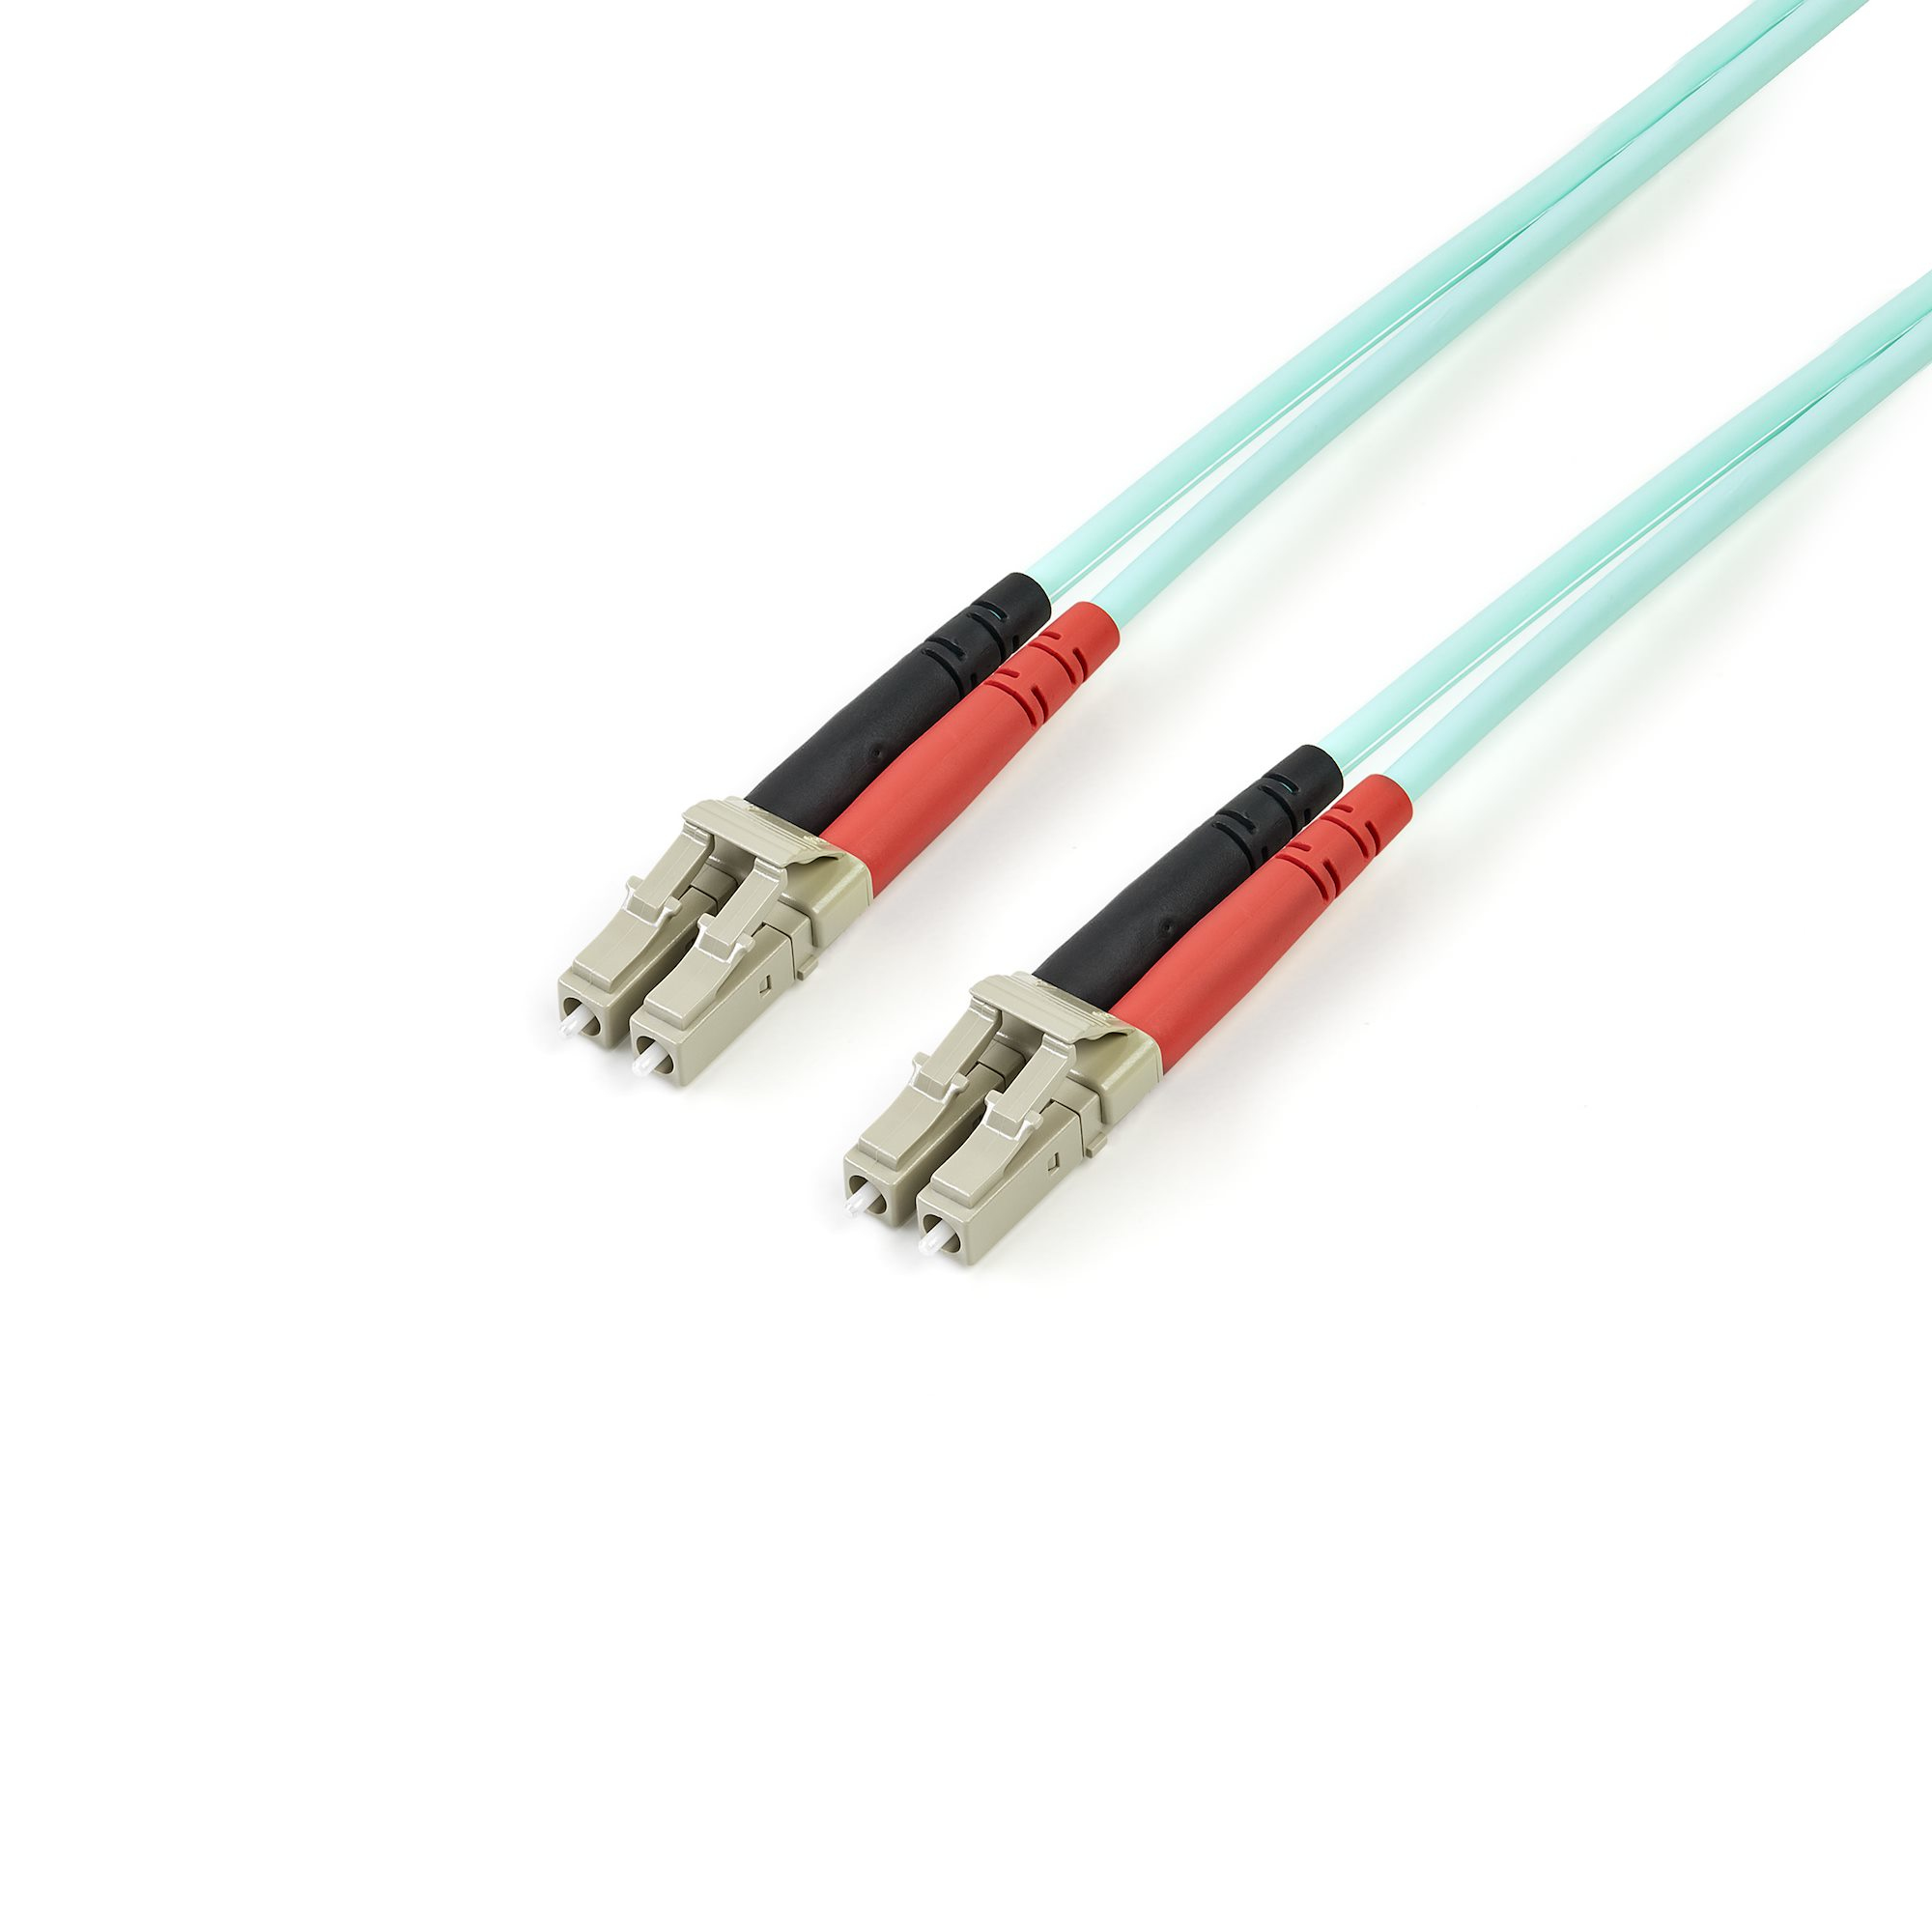 StarTech.com Fiber Optic Cable - 10 Gb Aqua - Multimode Duplex 50/125 - LSZH - LC/LC - 2 m~2m (6ft) LC/UPC to LC/UPC OM3 Multimode Fiber Optic Cable, Full Duplex 50/125µm Zipcord Fiber, 100G Networks, LOMMF/VCSEL, 